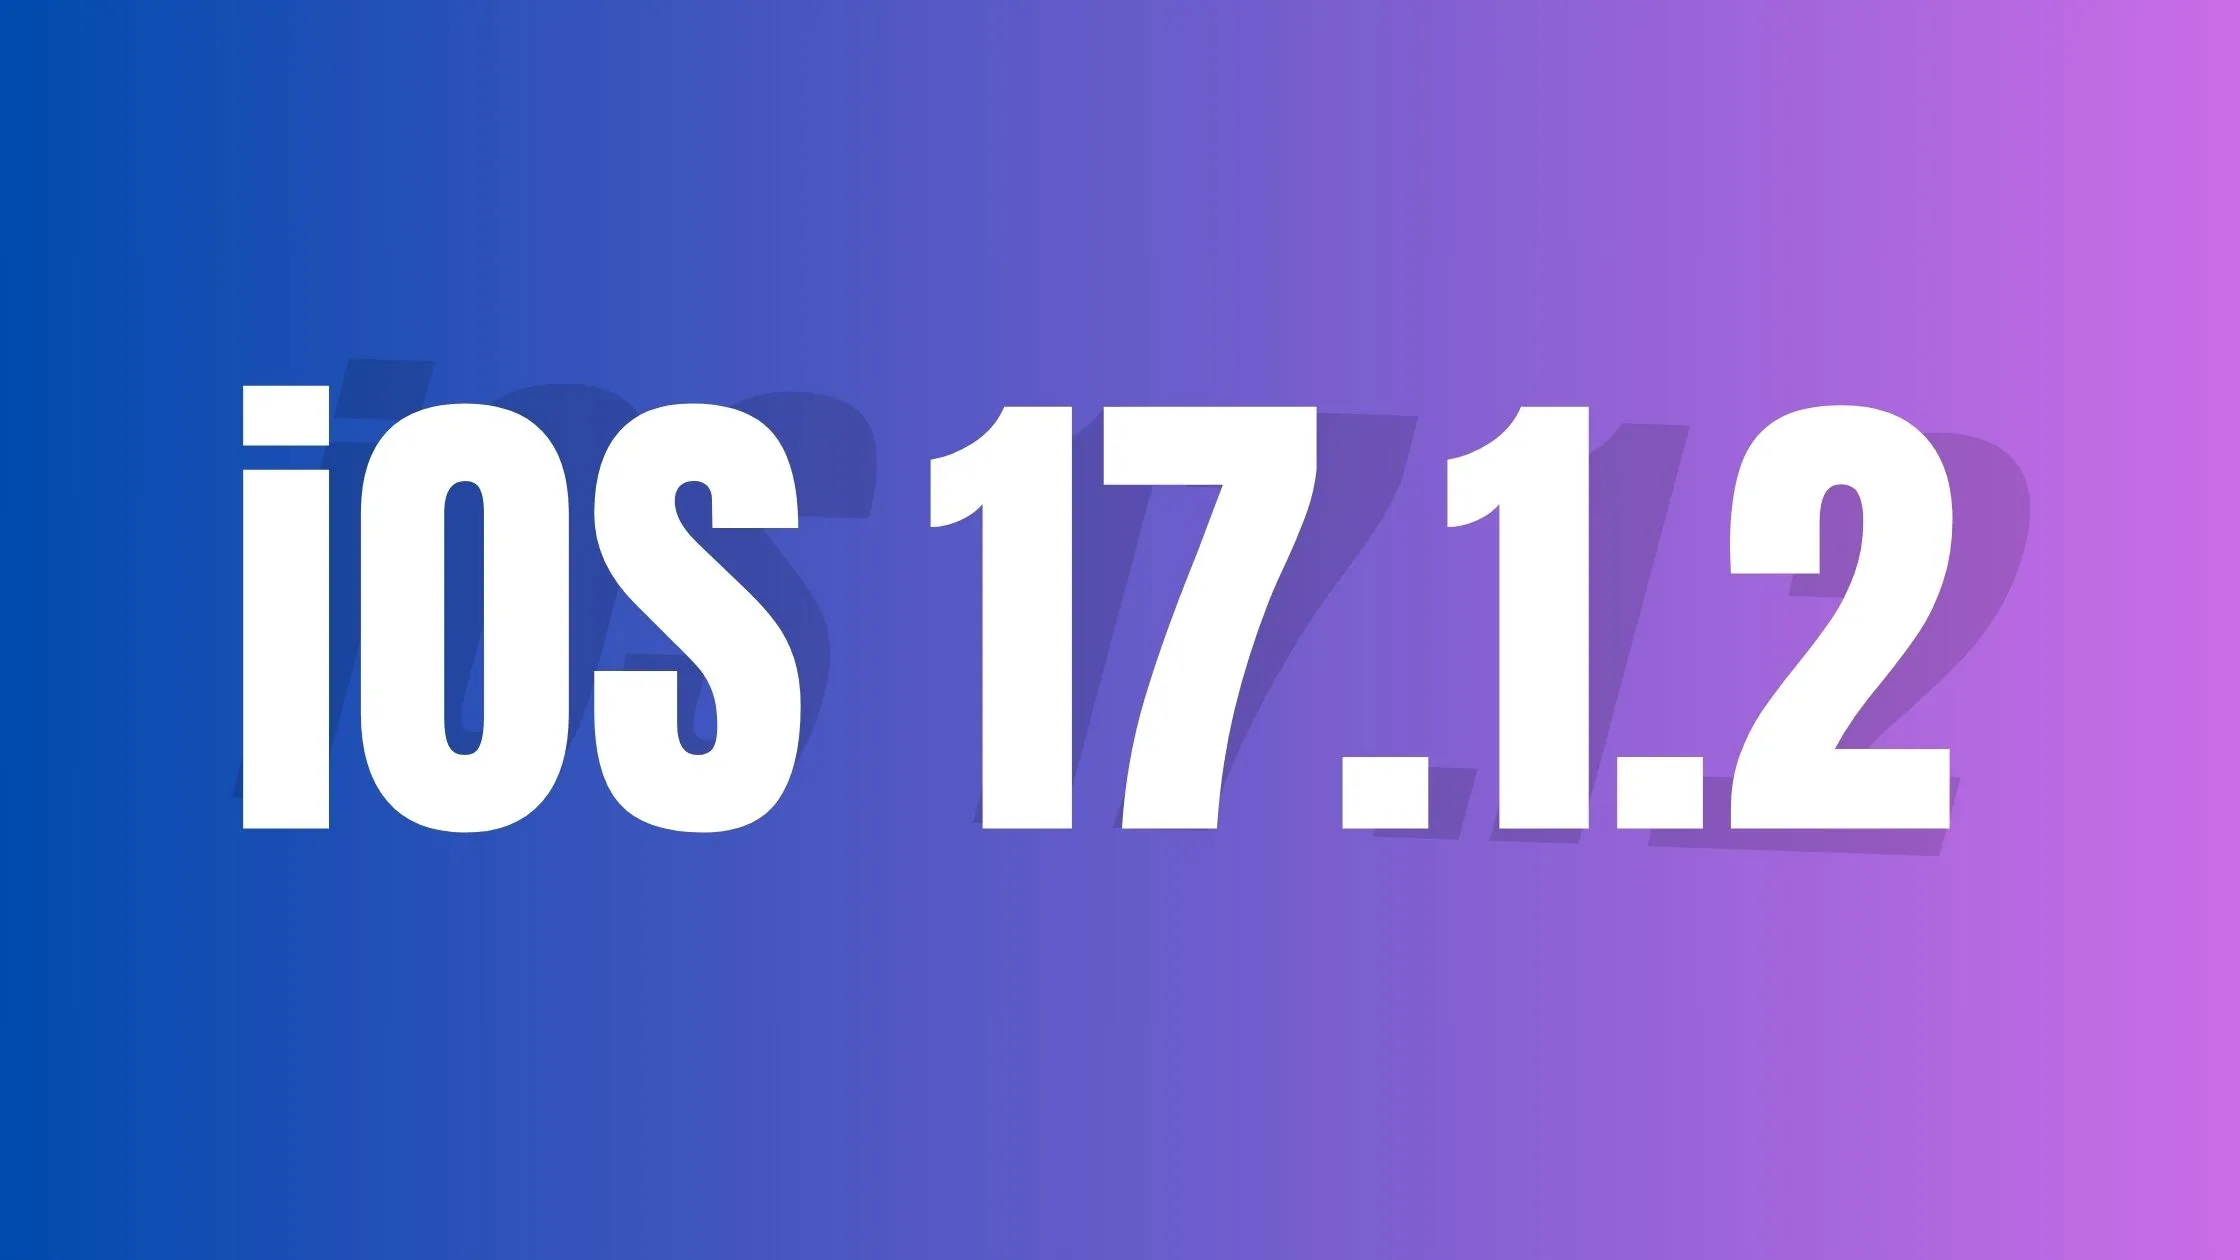 آپدیت iOS 17.1.2 به زودی برای رفع مشکل آیفون عرضه می شود